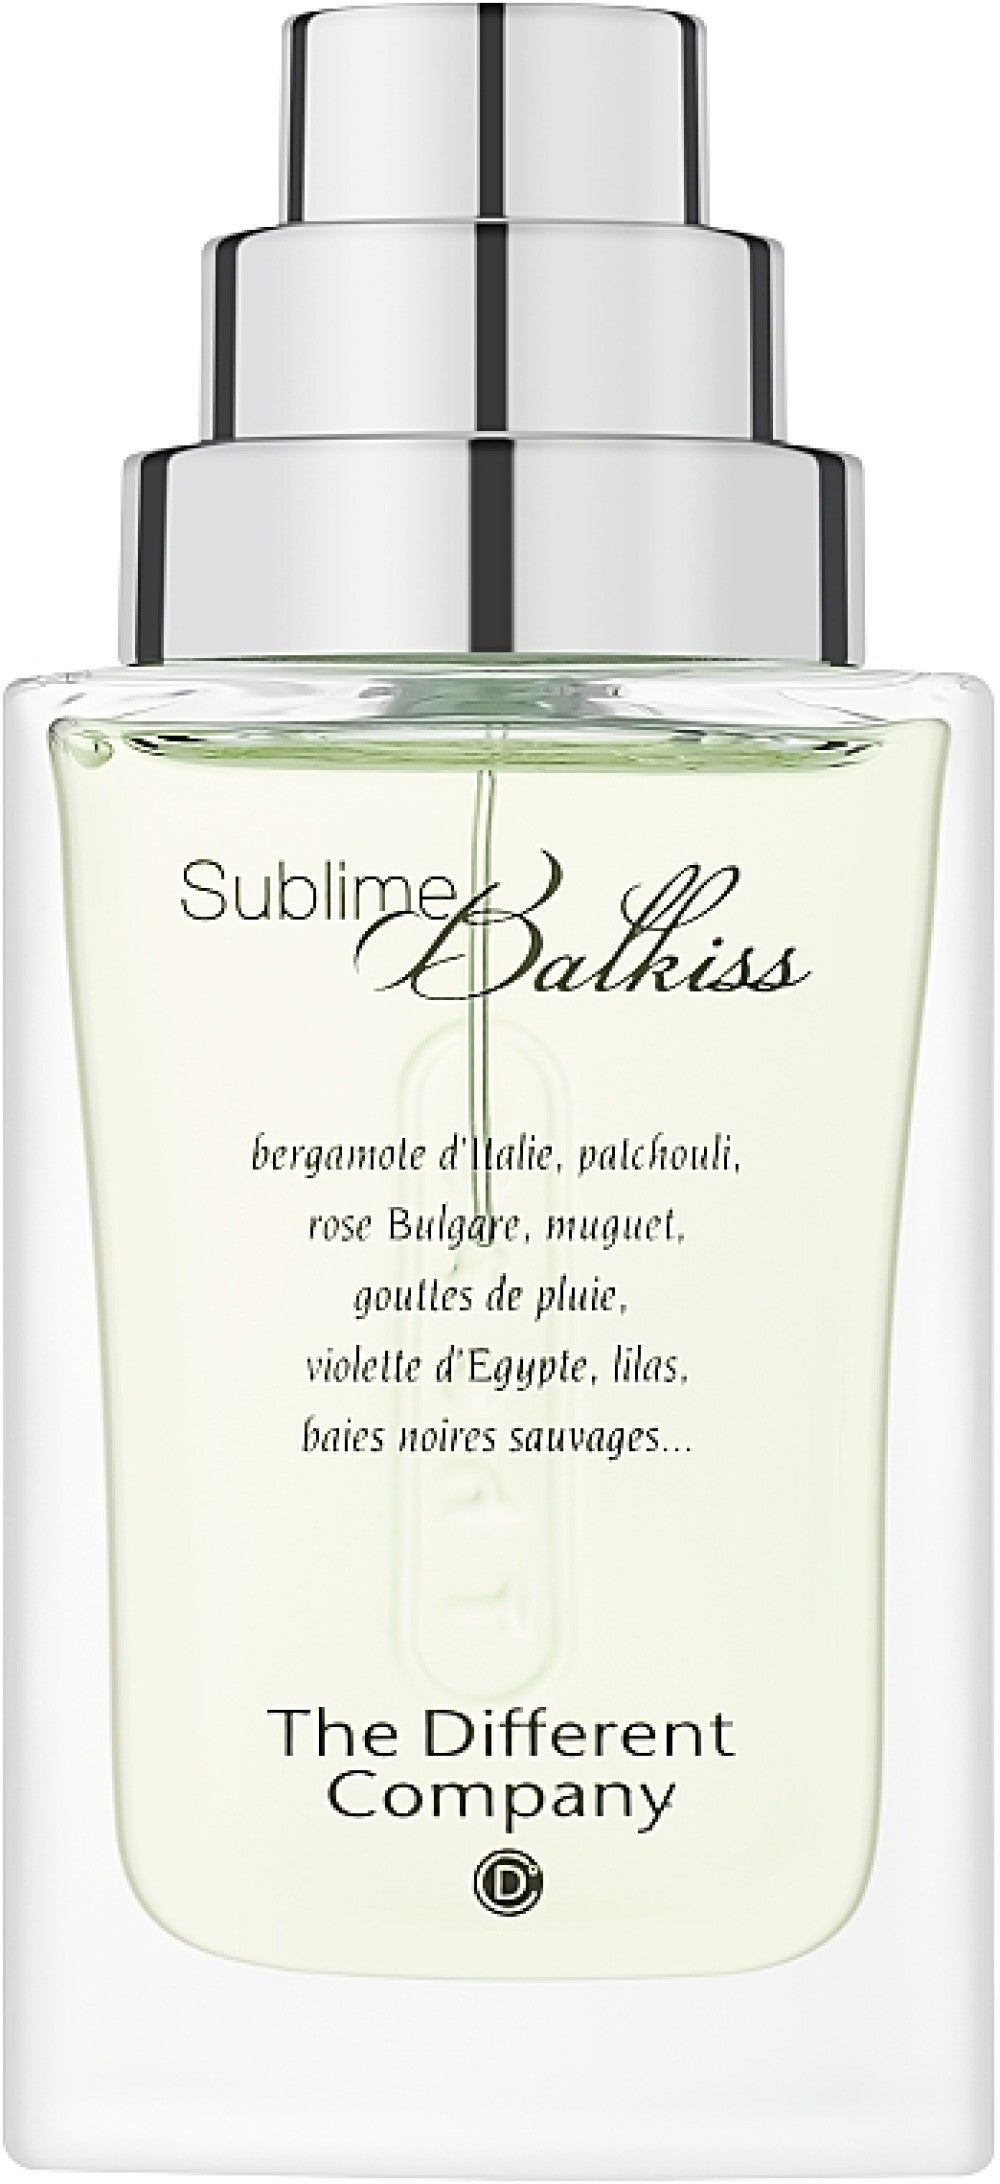 The Different Company, Sublime Balkiss, Eau De Parfum, For Women, 100 ml